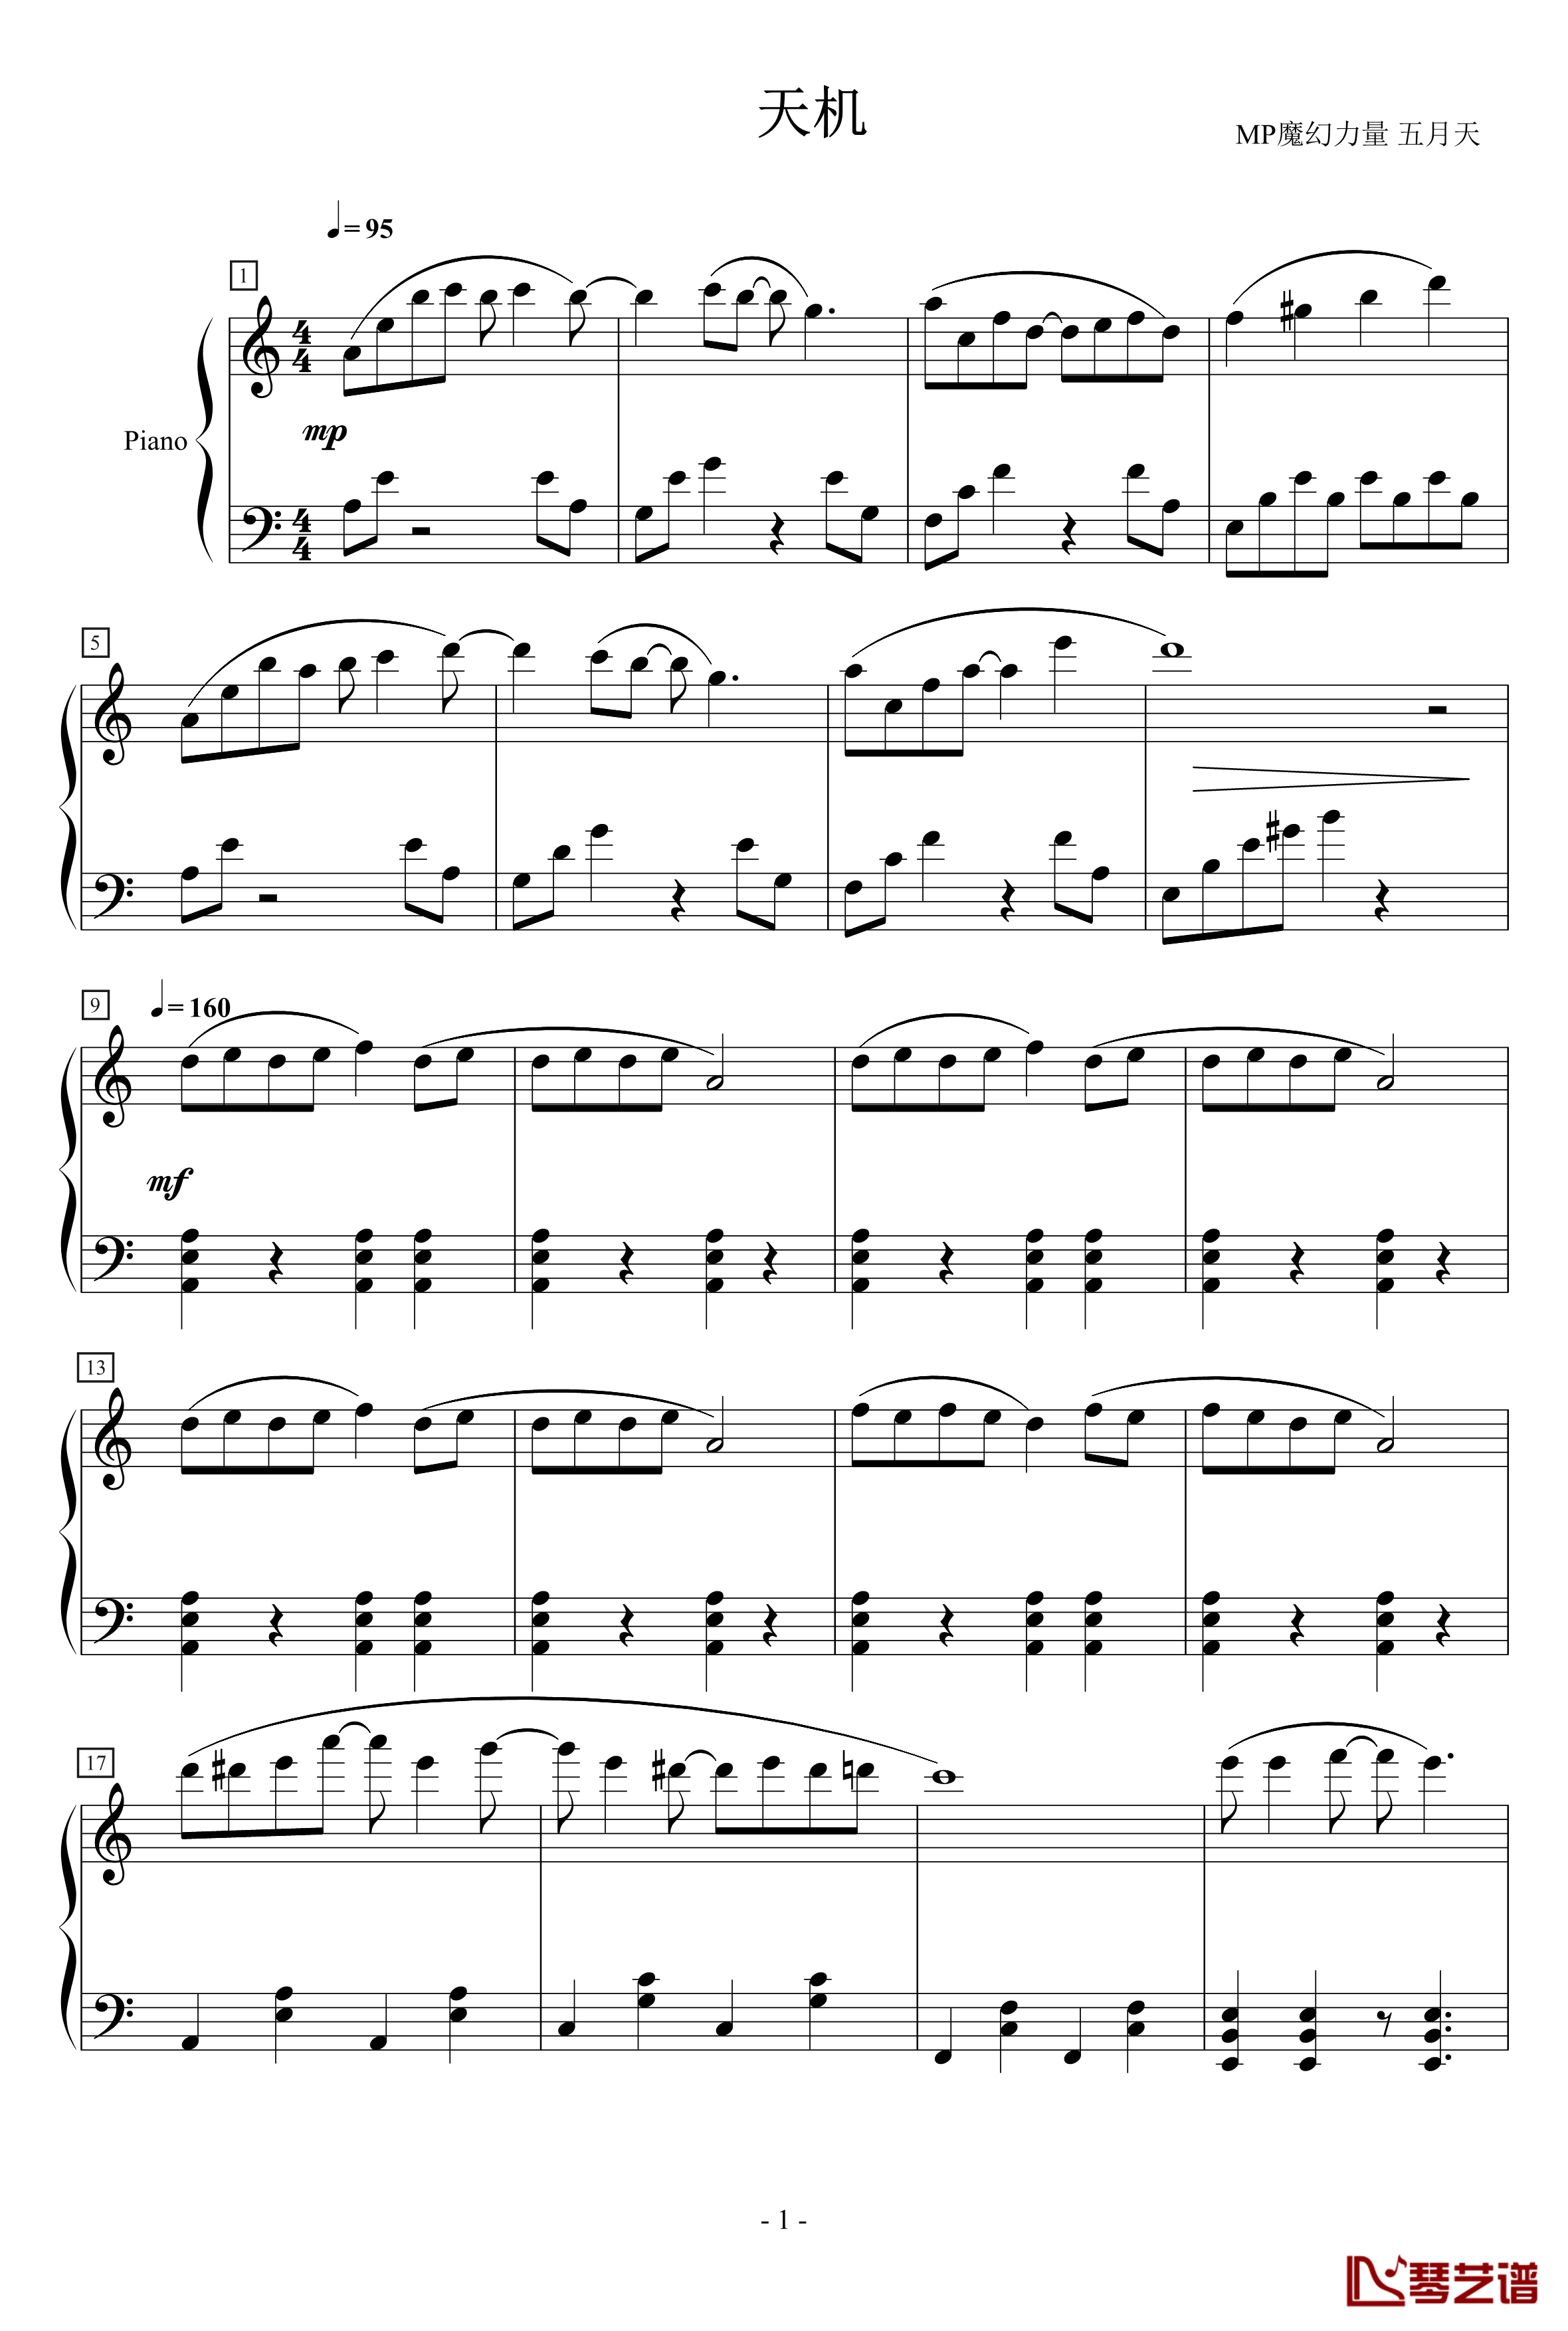 天机钢琴谱-MP魔幻力量1